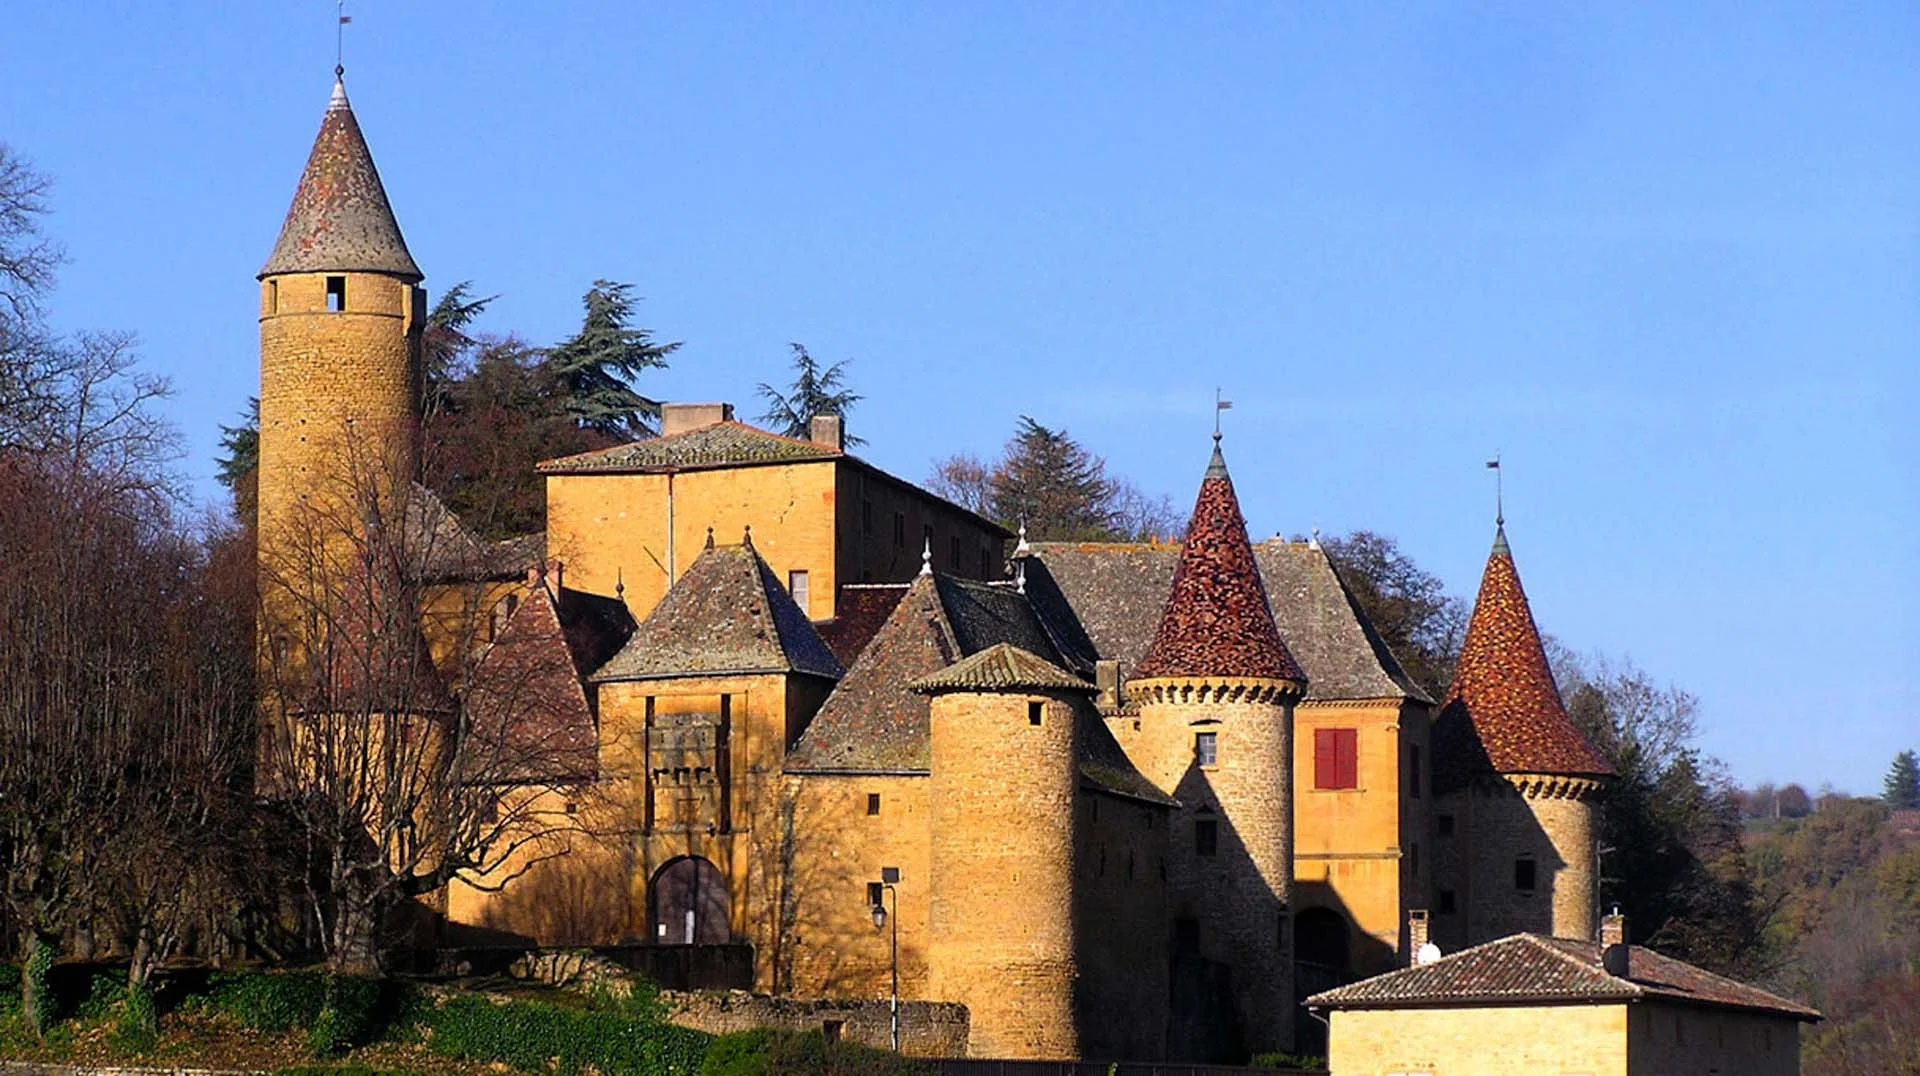 Beaujolais. Pierres dorées. Château de jarnioux